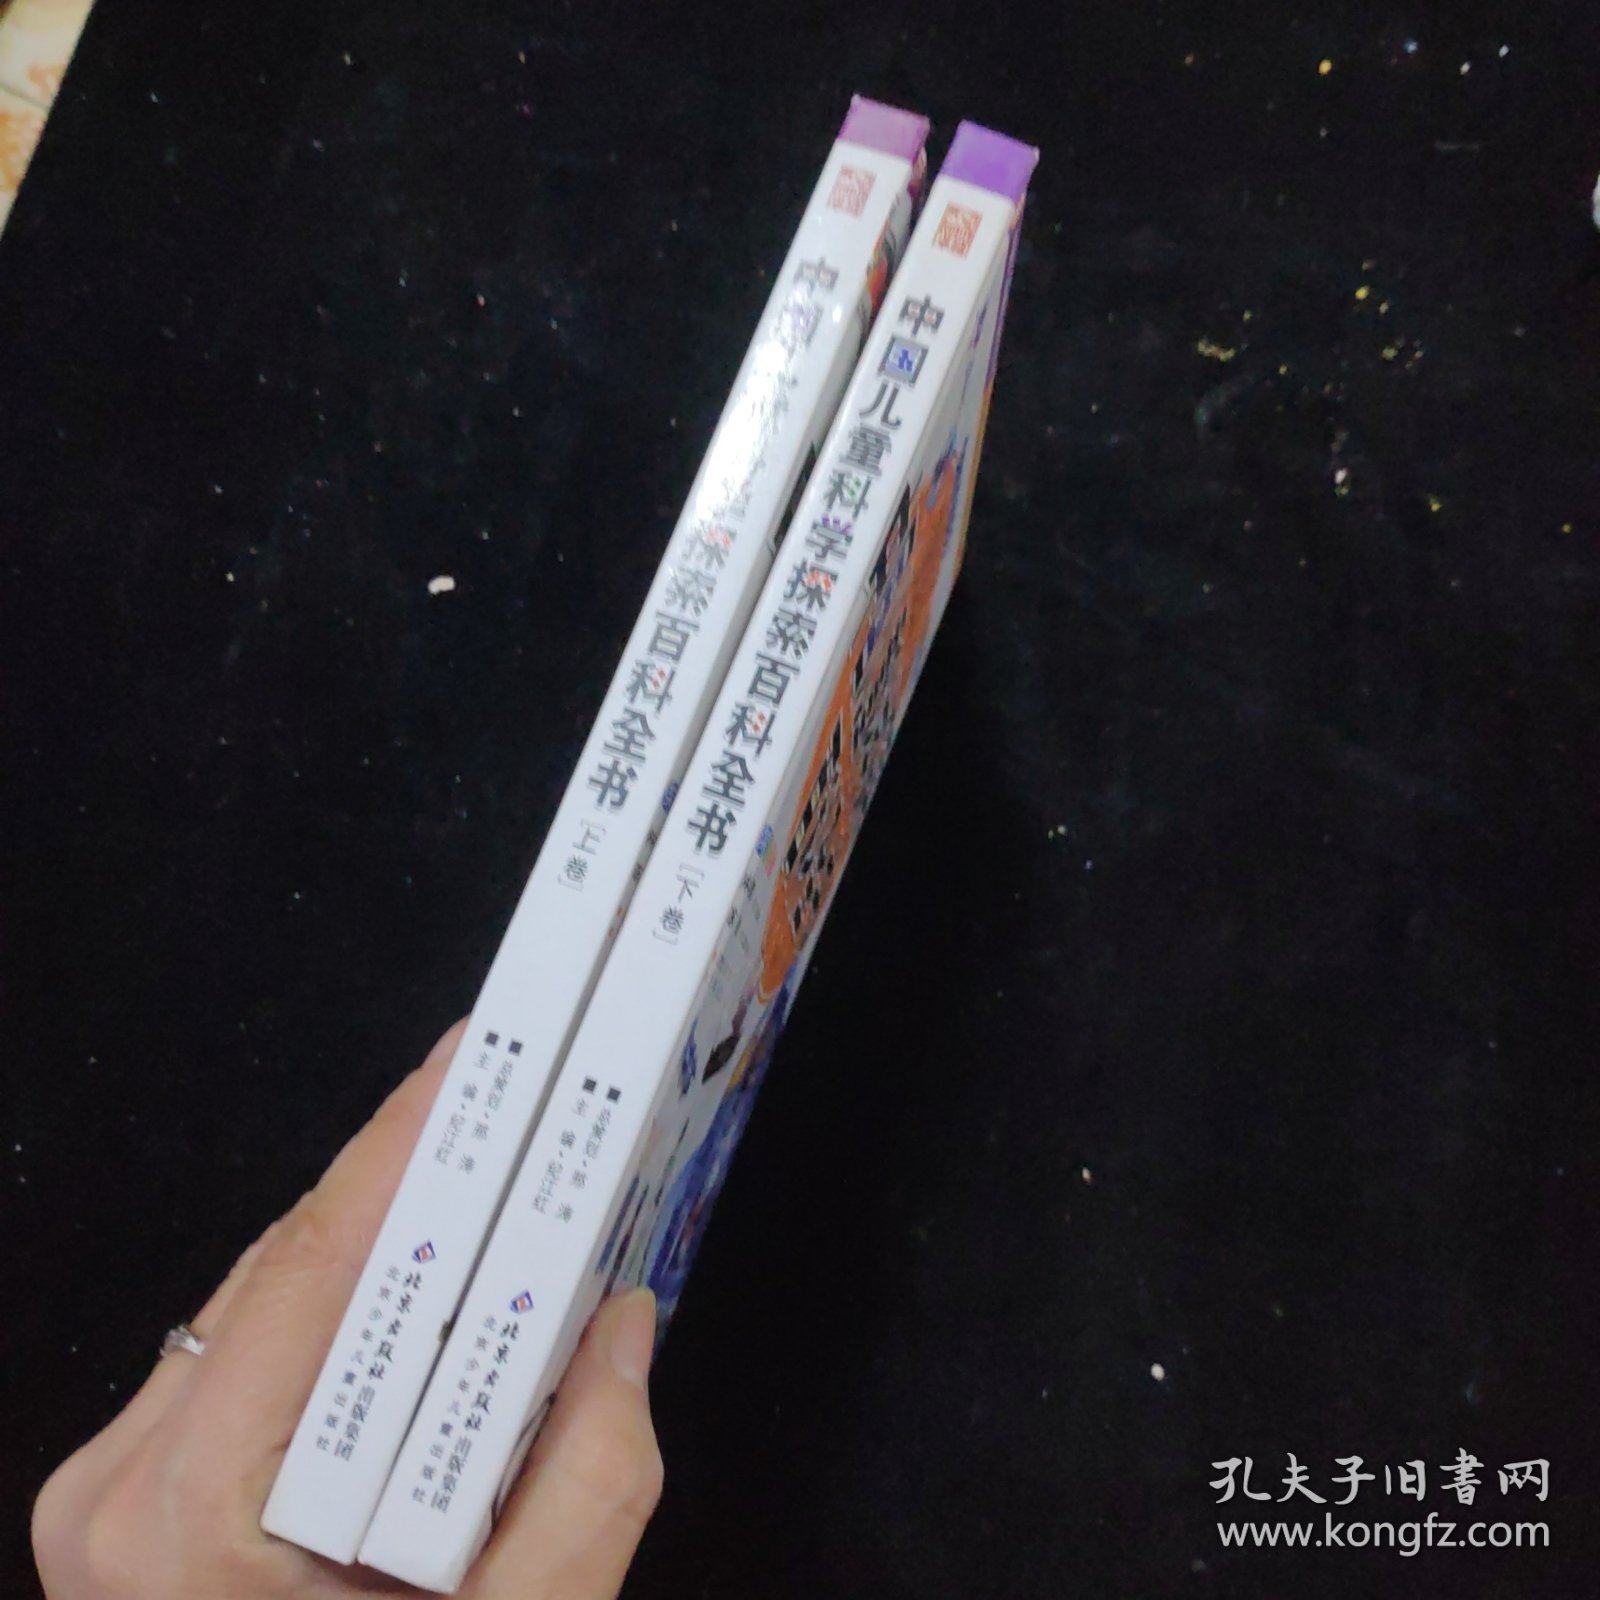 中国儿童科学探索百科全书.上下卷合售 精装